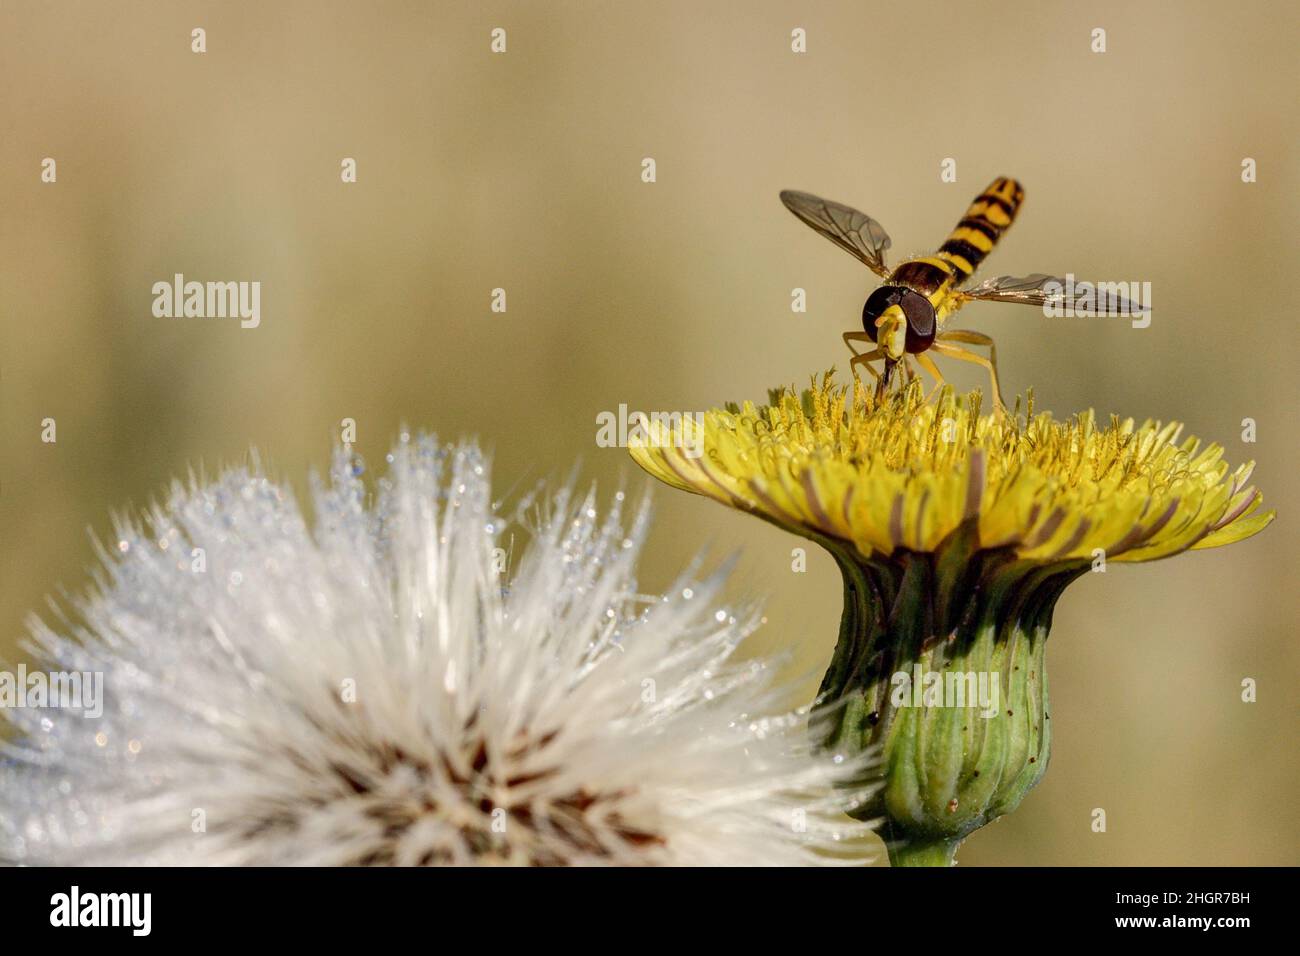 Ton dans ton.Un aéroglisseur se trouve sur une fleur jaune et se nourrit du pollen et du nectar de la plante. Banque D'Images